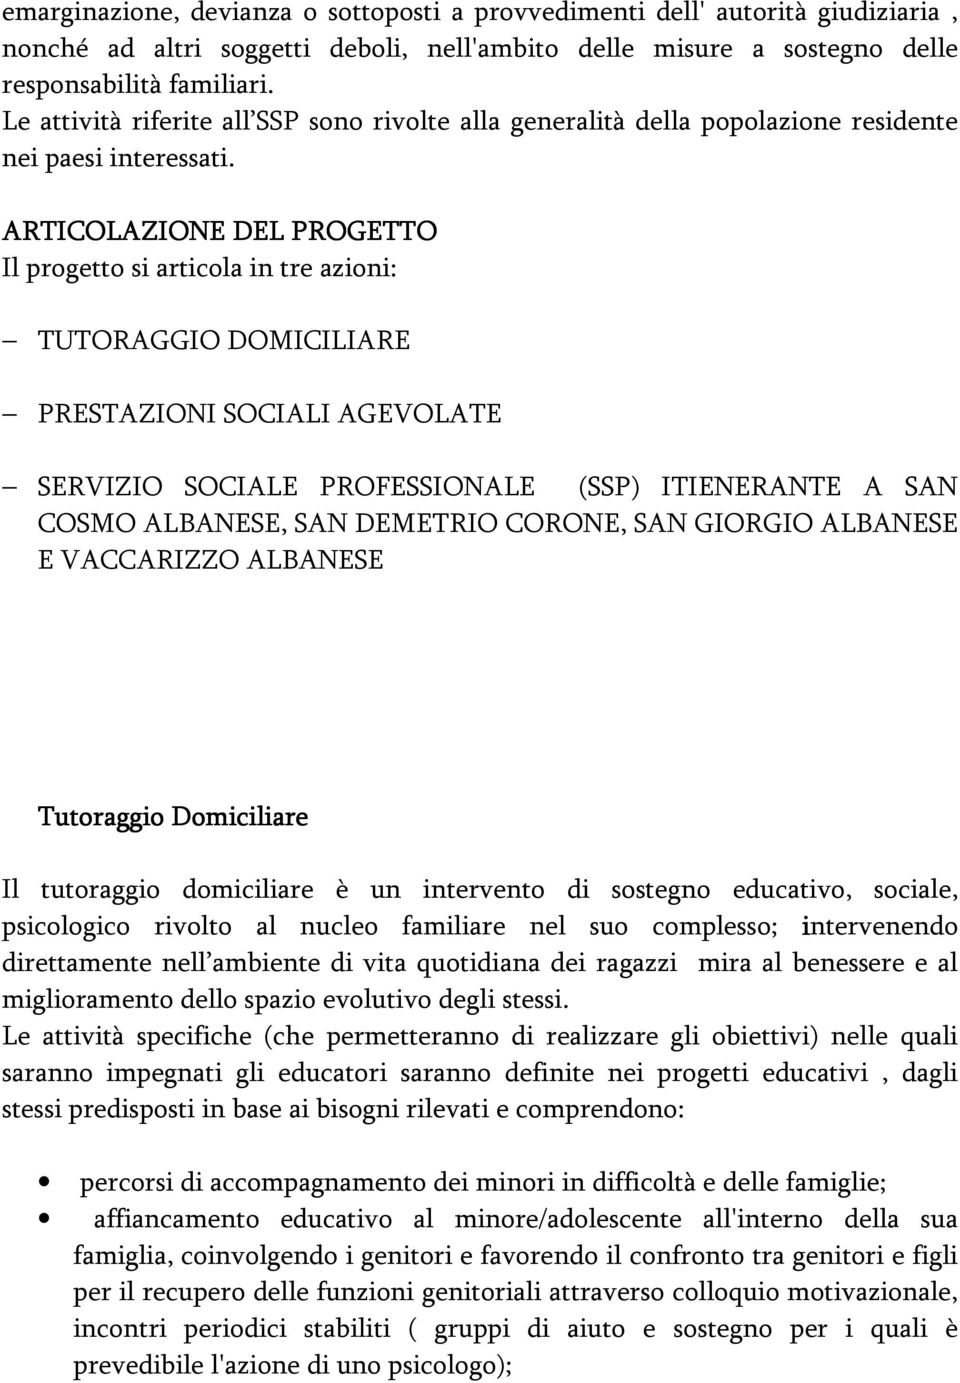 ARTICOLAZIONE DEL PROGETTO Il progetto si articola in tre azioni: TUTORAGGIO DOMICILIARE PRESTAZIONI SOCIALI AGEVOLATE SERVIZIO SOCIALE PROFESSIONALE (SSP) ITIENERANTE A SAN COSMO ALBANESE, SAN